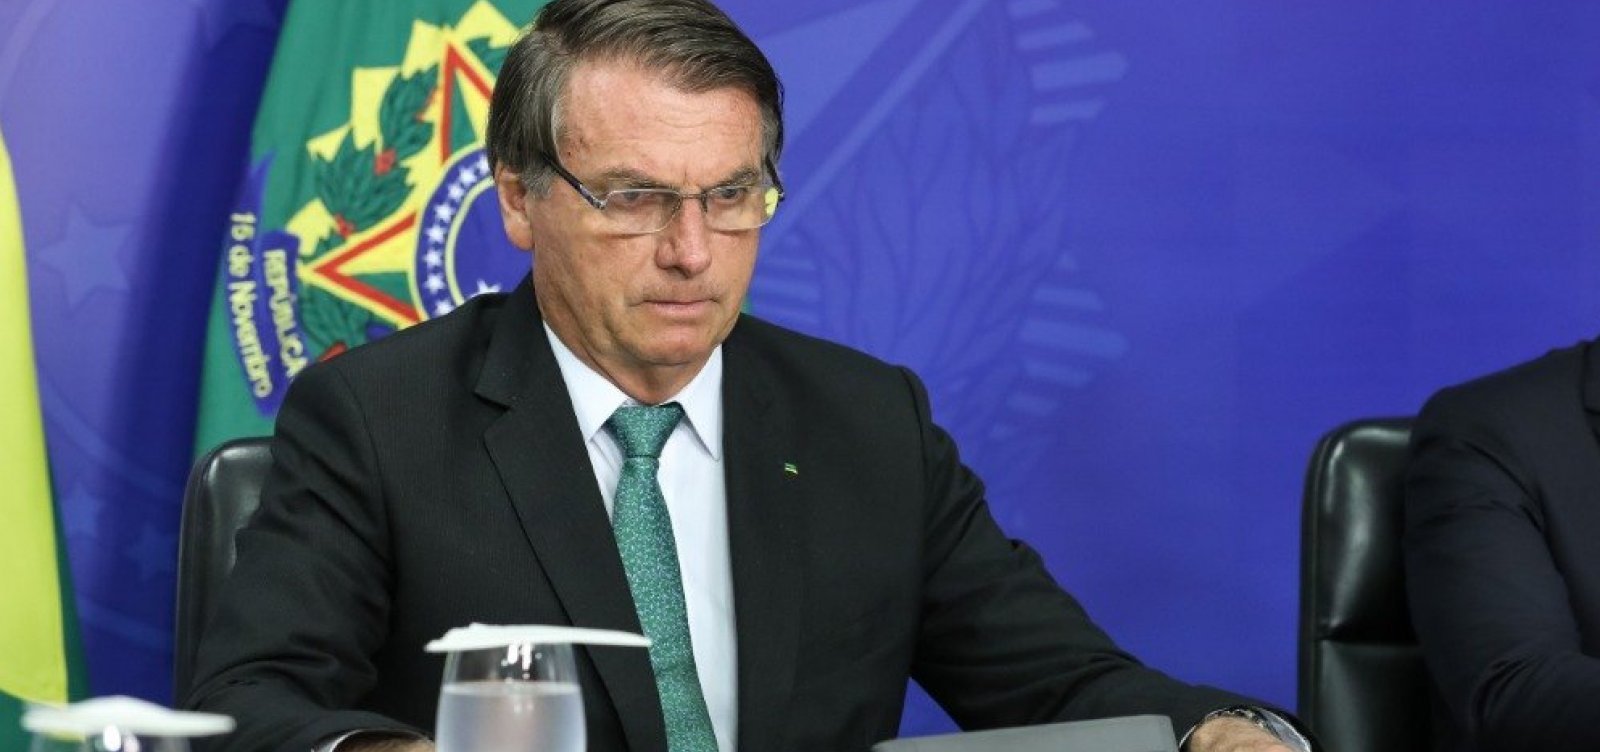 De olho na eleição, Bolsonaro corta 3,2 bi do orçamento, mas mantém reajuste para servidores